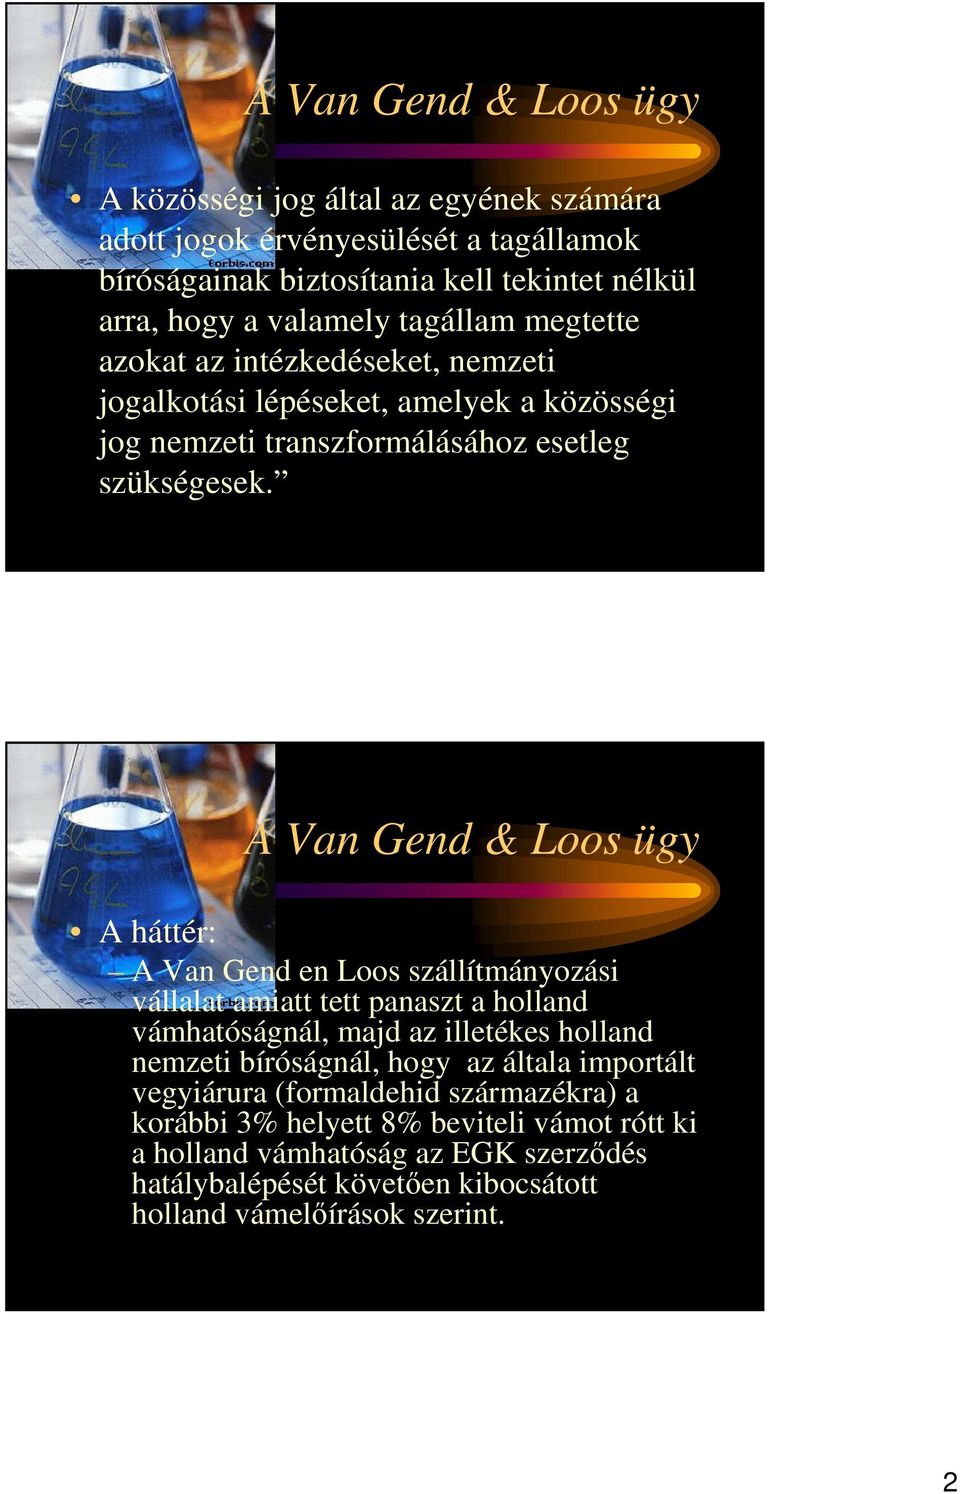 A Van Gend & Loos ügy A háttér: A Van Gend en Loos szállítmányozási vállalat amiatt tett panaszt a holland vámhatóságnál, majd az illetékes holland nemzeti bíróságnál, hogy az